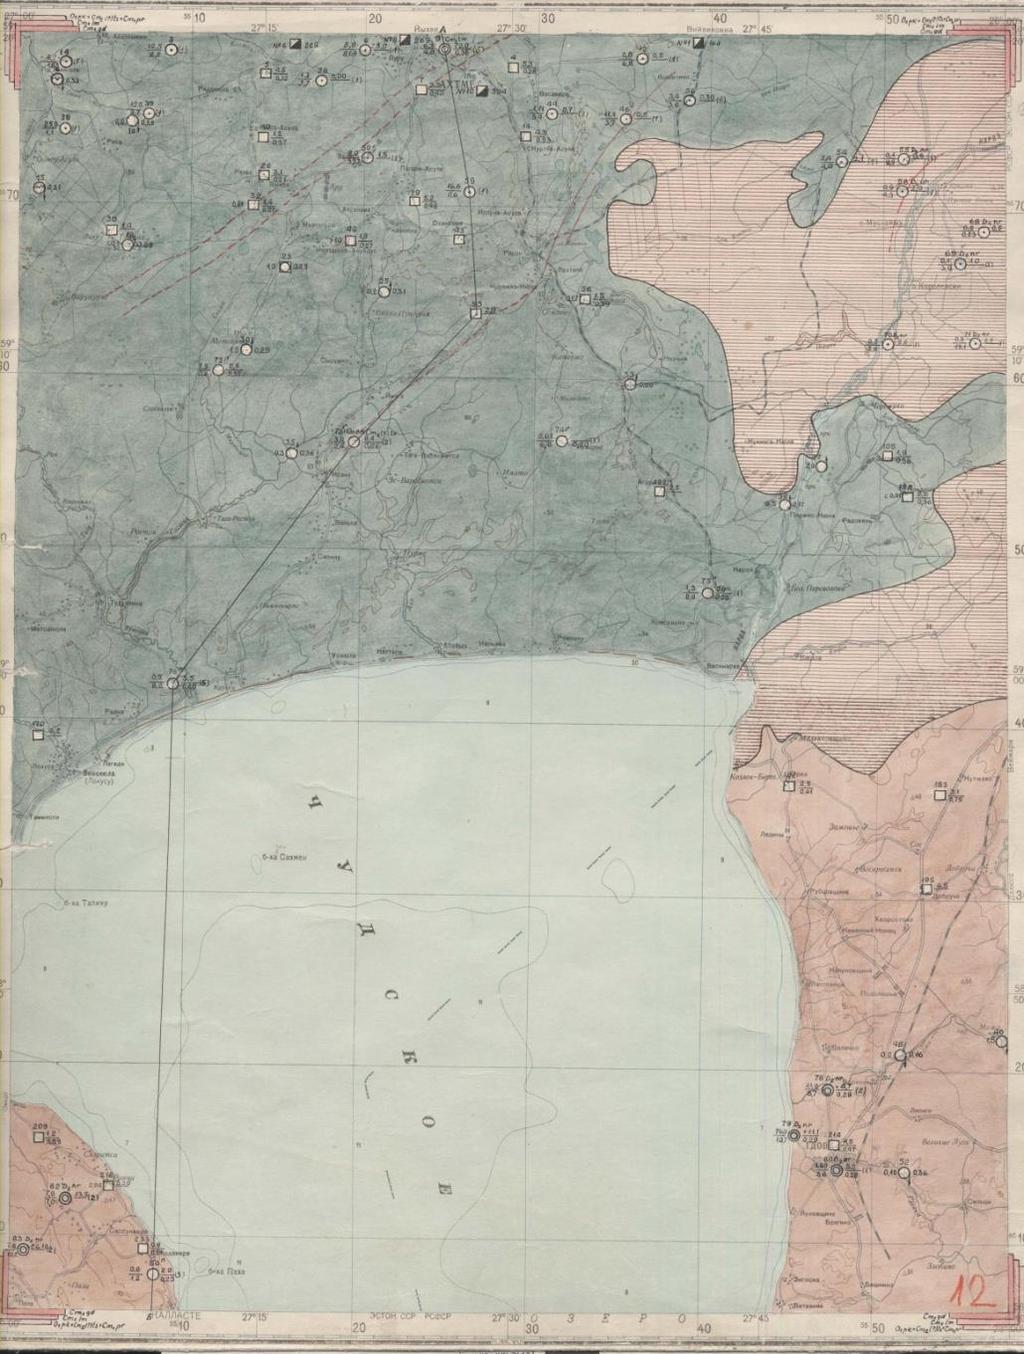 Esimene hüdrogeoloogiline kaart Esimene Eesti hüdrogeoloogiline